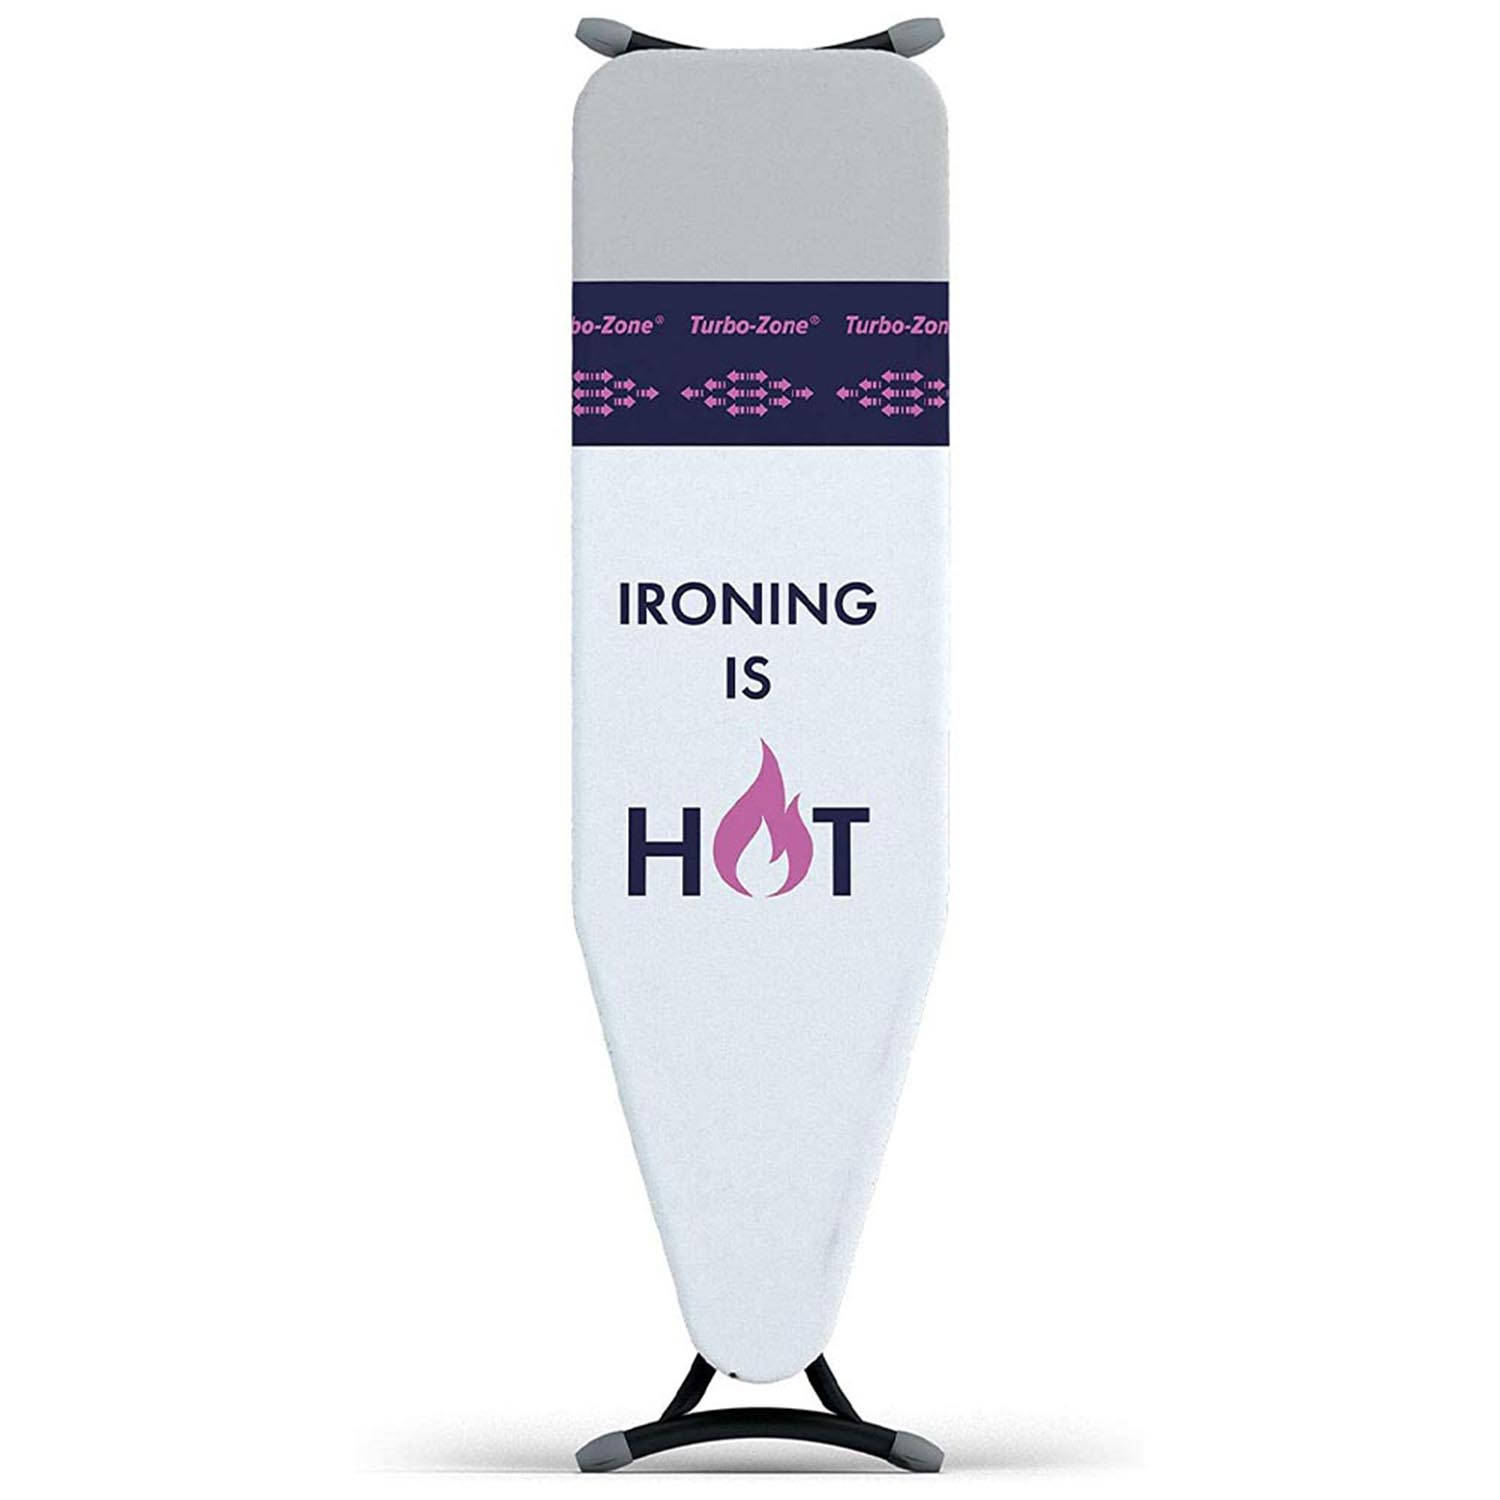 Laundryspecialist® Strijkplank Ironing Is Hot Met Geavanceerde Parkeerplaats Voor Uw Verhitte Strijkijzer